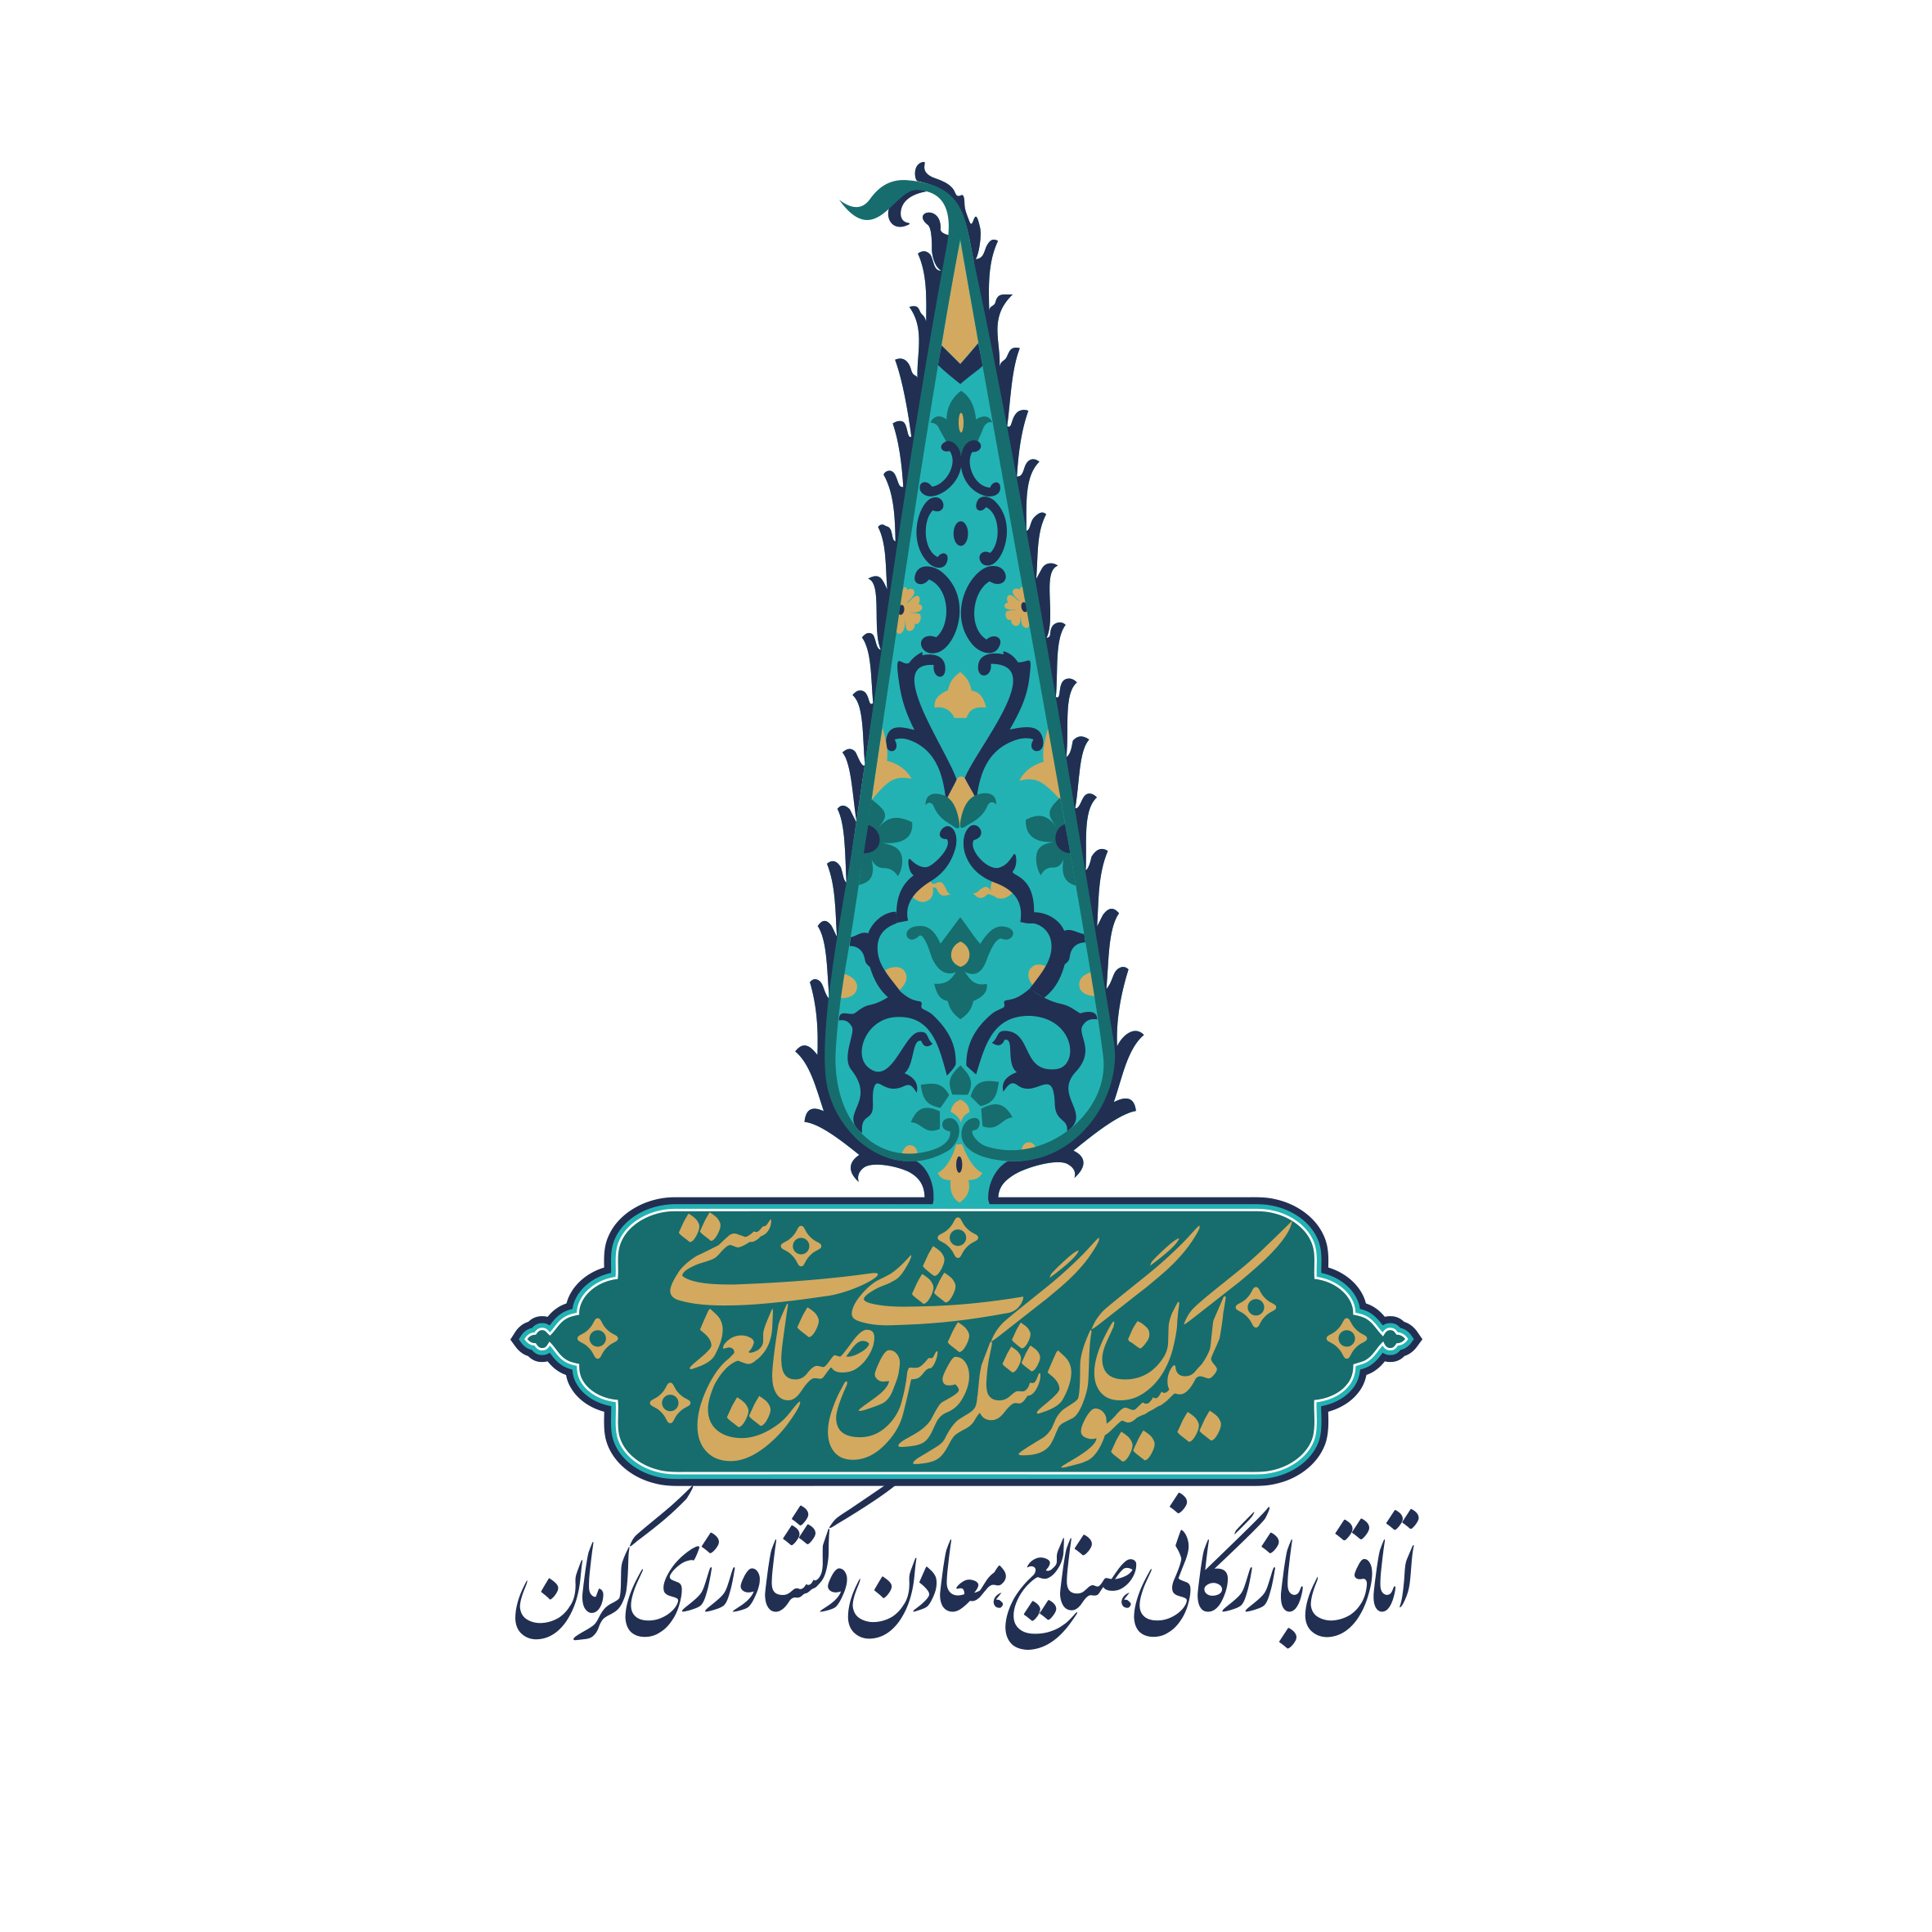 کمیسیون گردشگری فرش و صنایع دستی اتاق بازرگانی کرمان